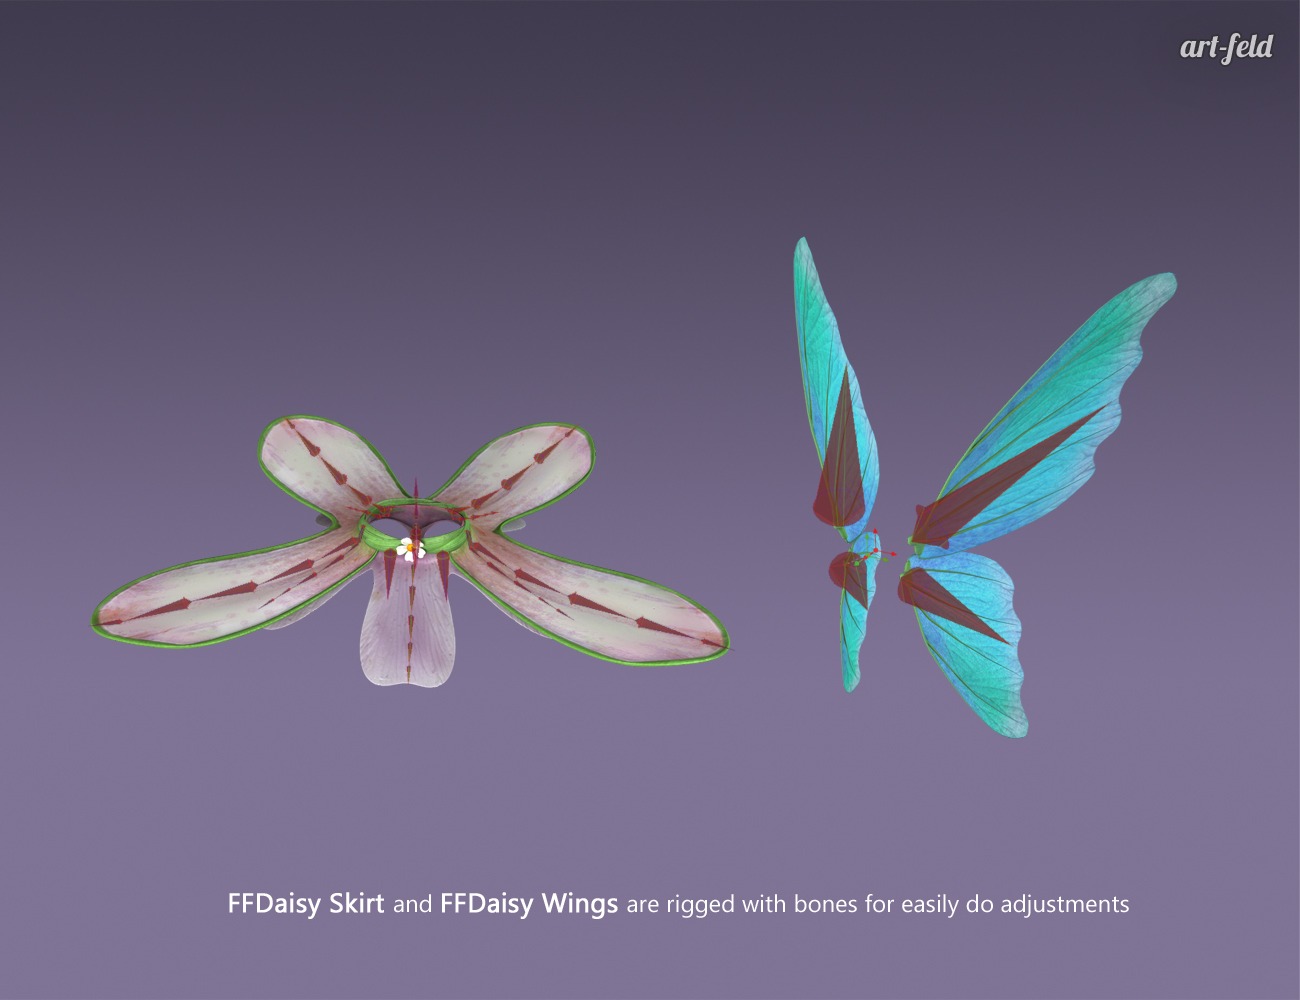 Flower Fairy Daisy for Genesis 3 Female(s) by: art-feld, 3D Models by Daz 3D